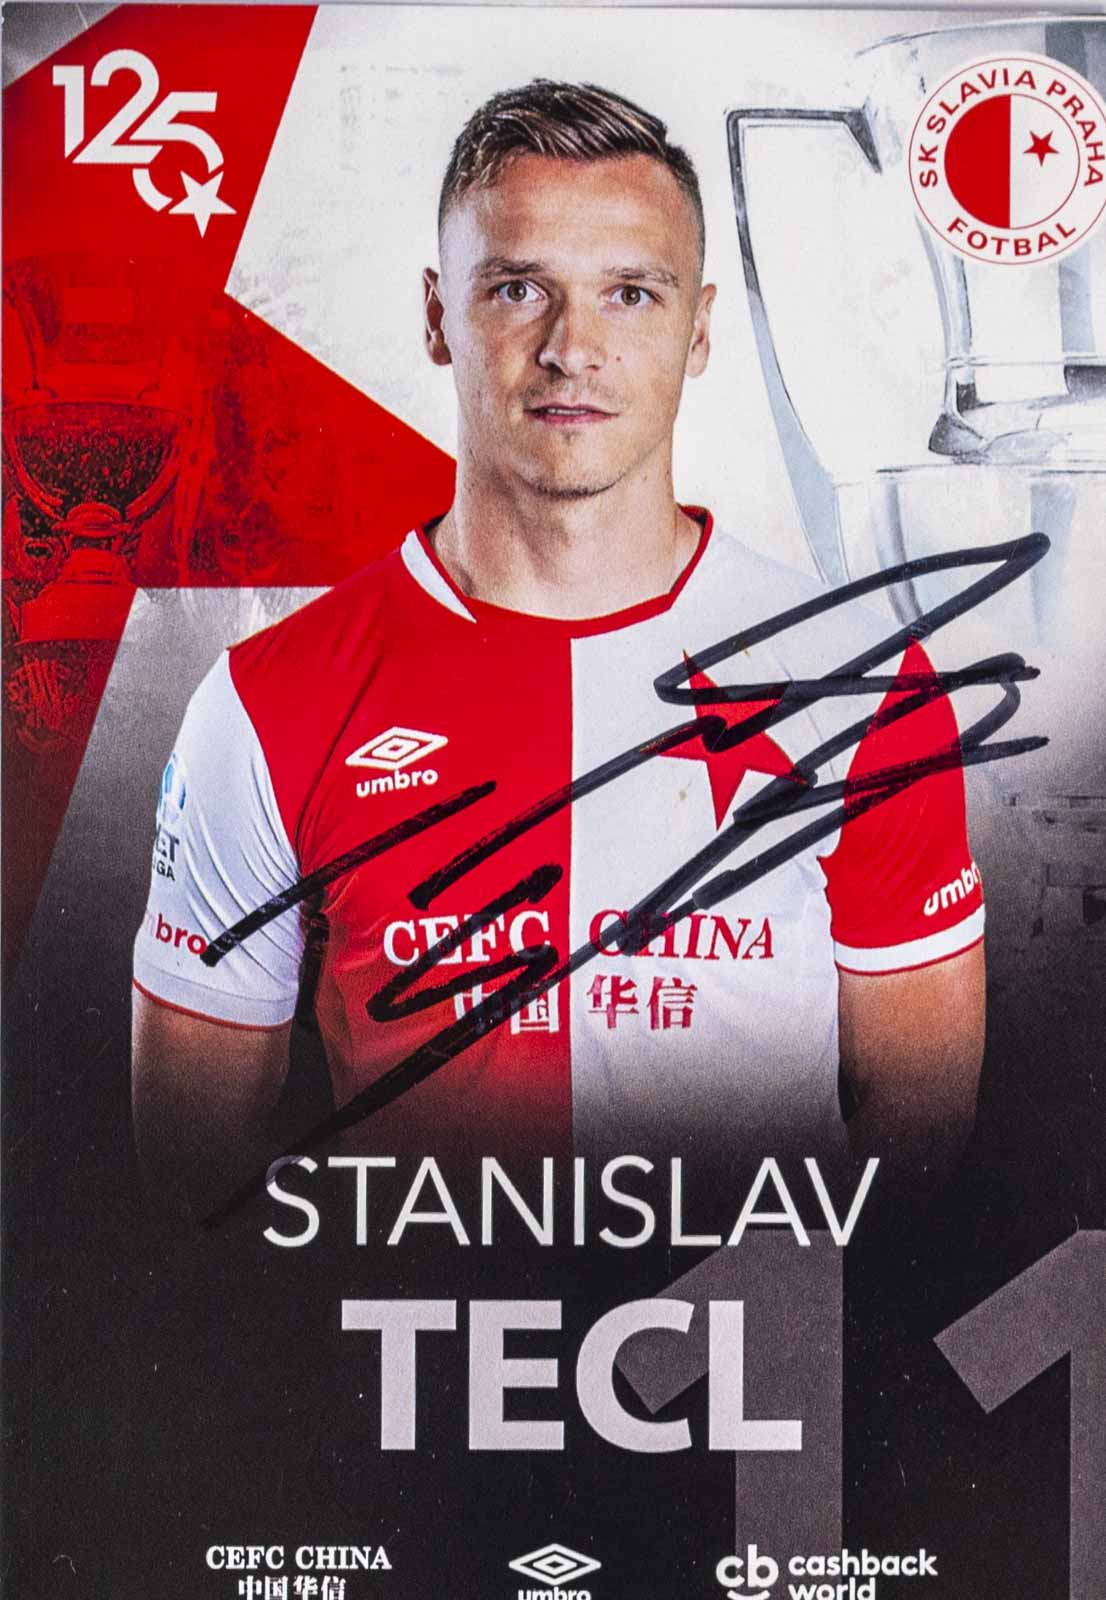 Podpisová karta, Stanislav Tecl, SK Slavia Praha, 125 let, autogram